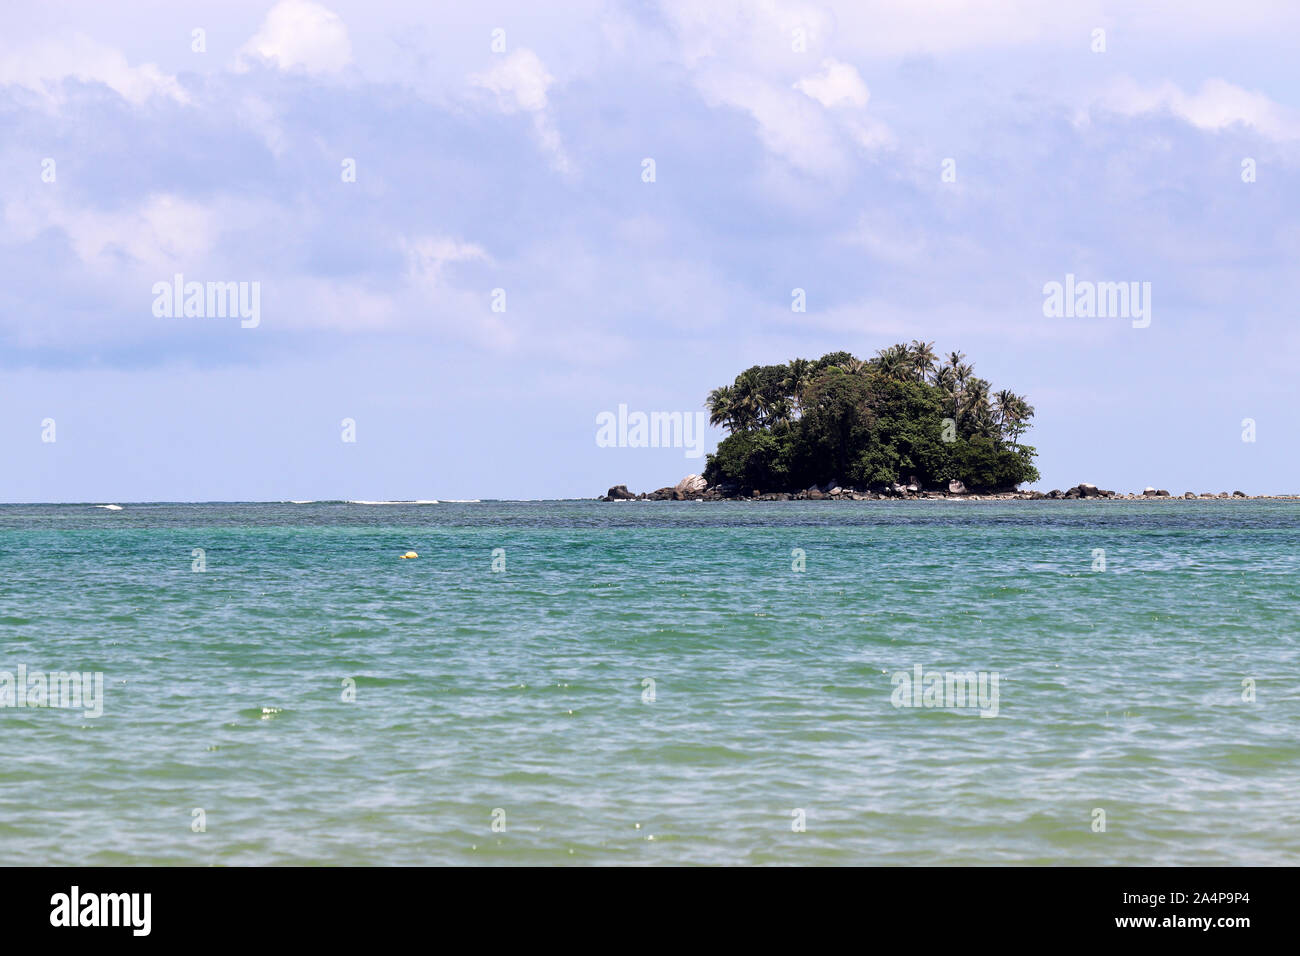 Île tropicale avec palmiers dans un océan, vue pittoresque de l'eau calme. Seascape colorés avec ciel bleu et les nuages blancs, les vacances Banque D'Images